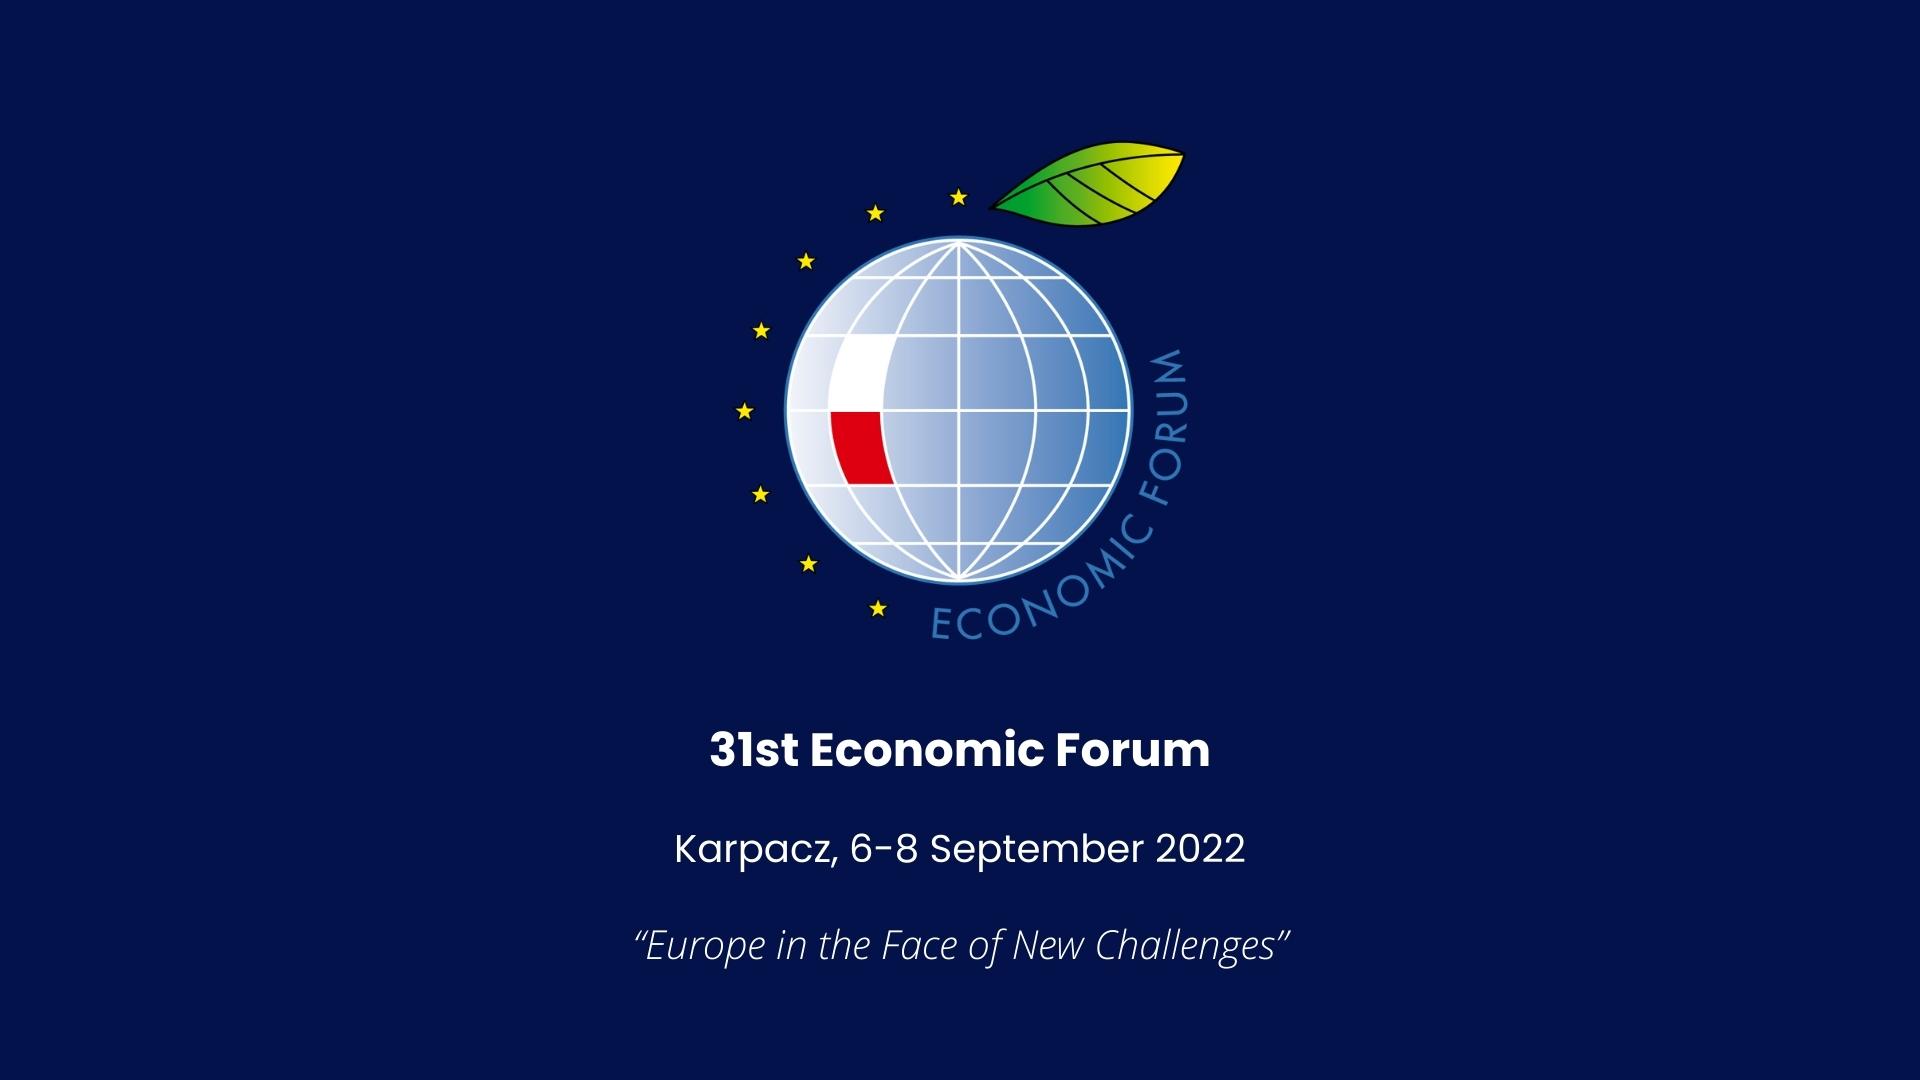 ASI - L’Agenzia Spaziale Italiana al 31° Economic Forum di Karpacz